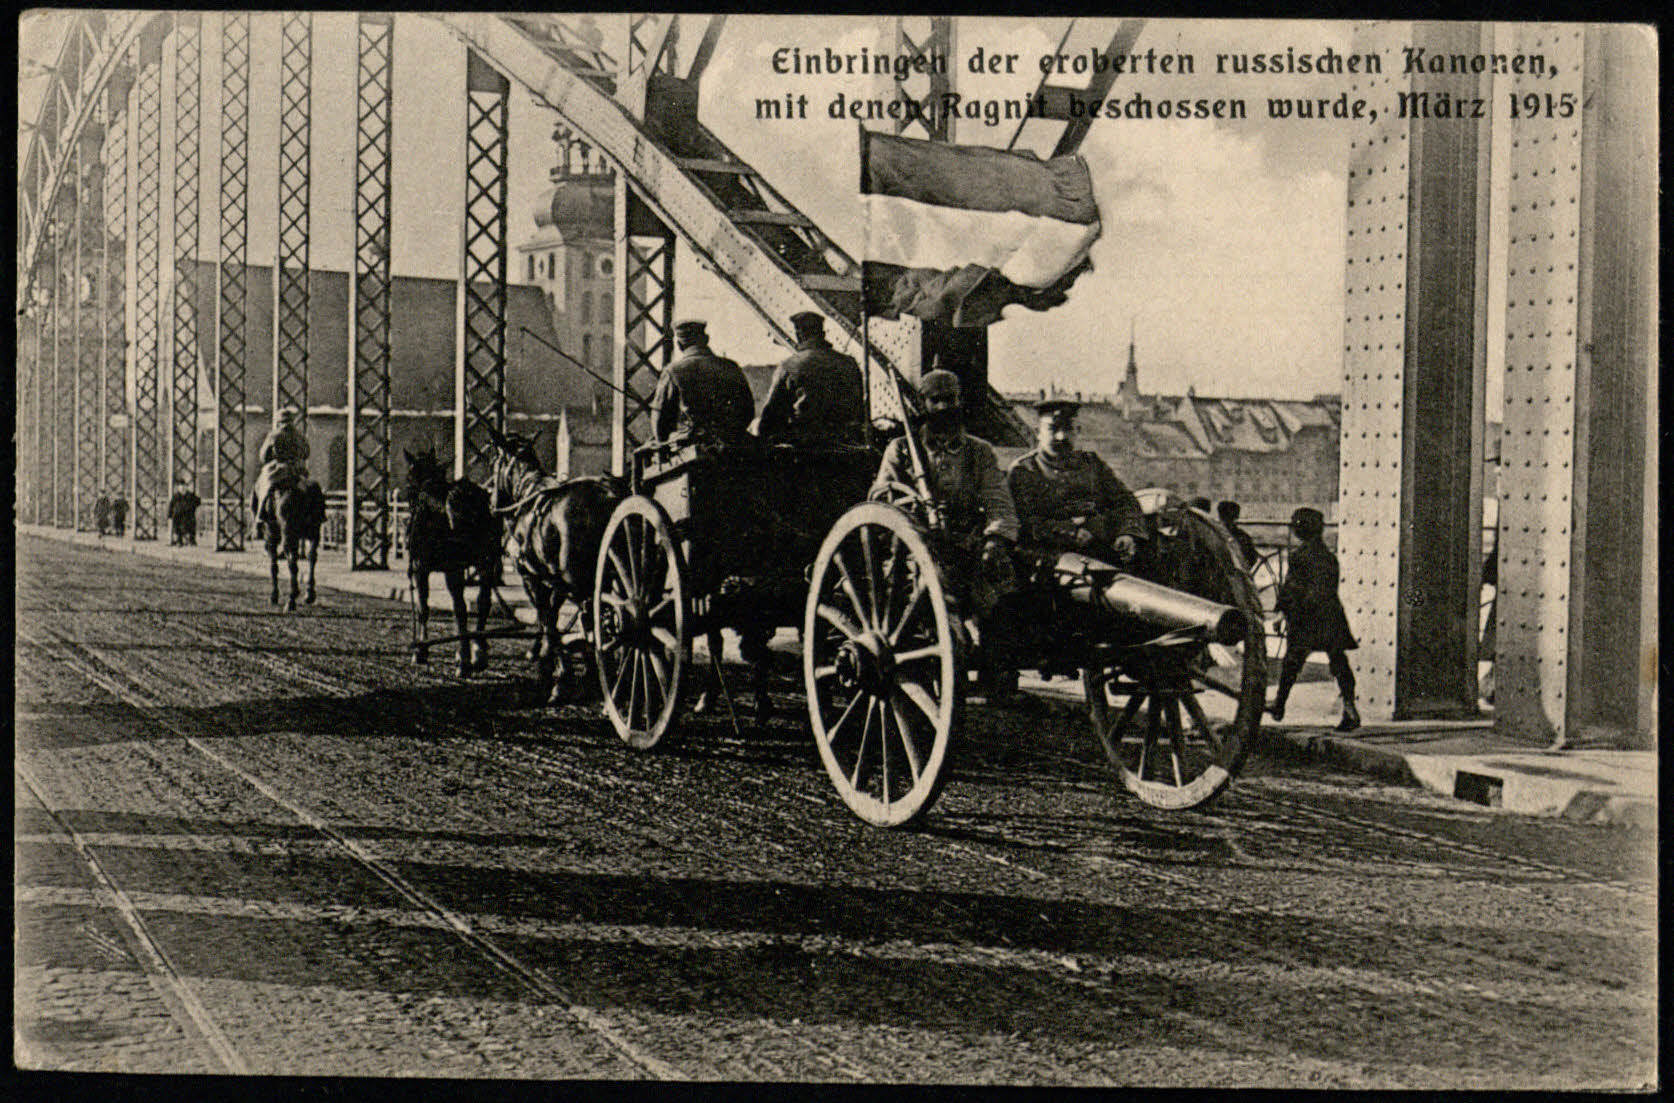 Vokiečių kariai gabena rusų patrankas, kuriomis apšaudė Ragainę. 1915 m. kovo mėn. Tilžėje spausdintas atvirukas